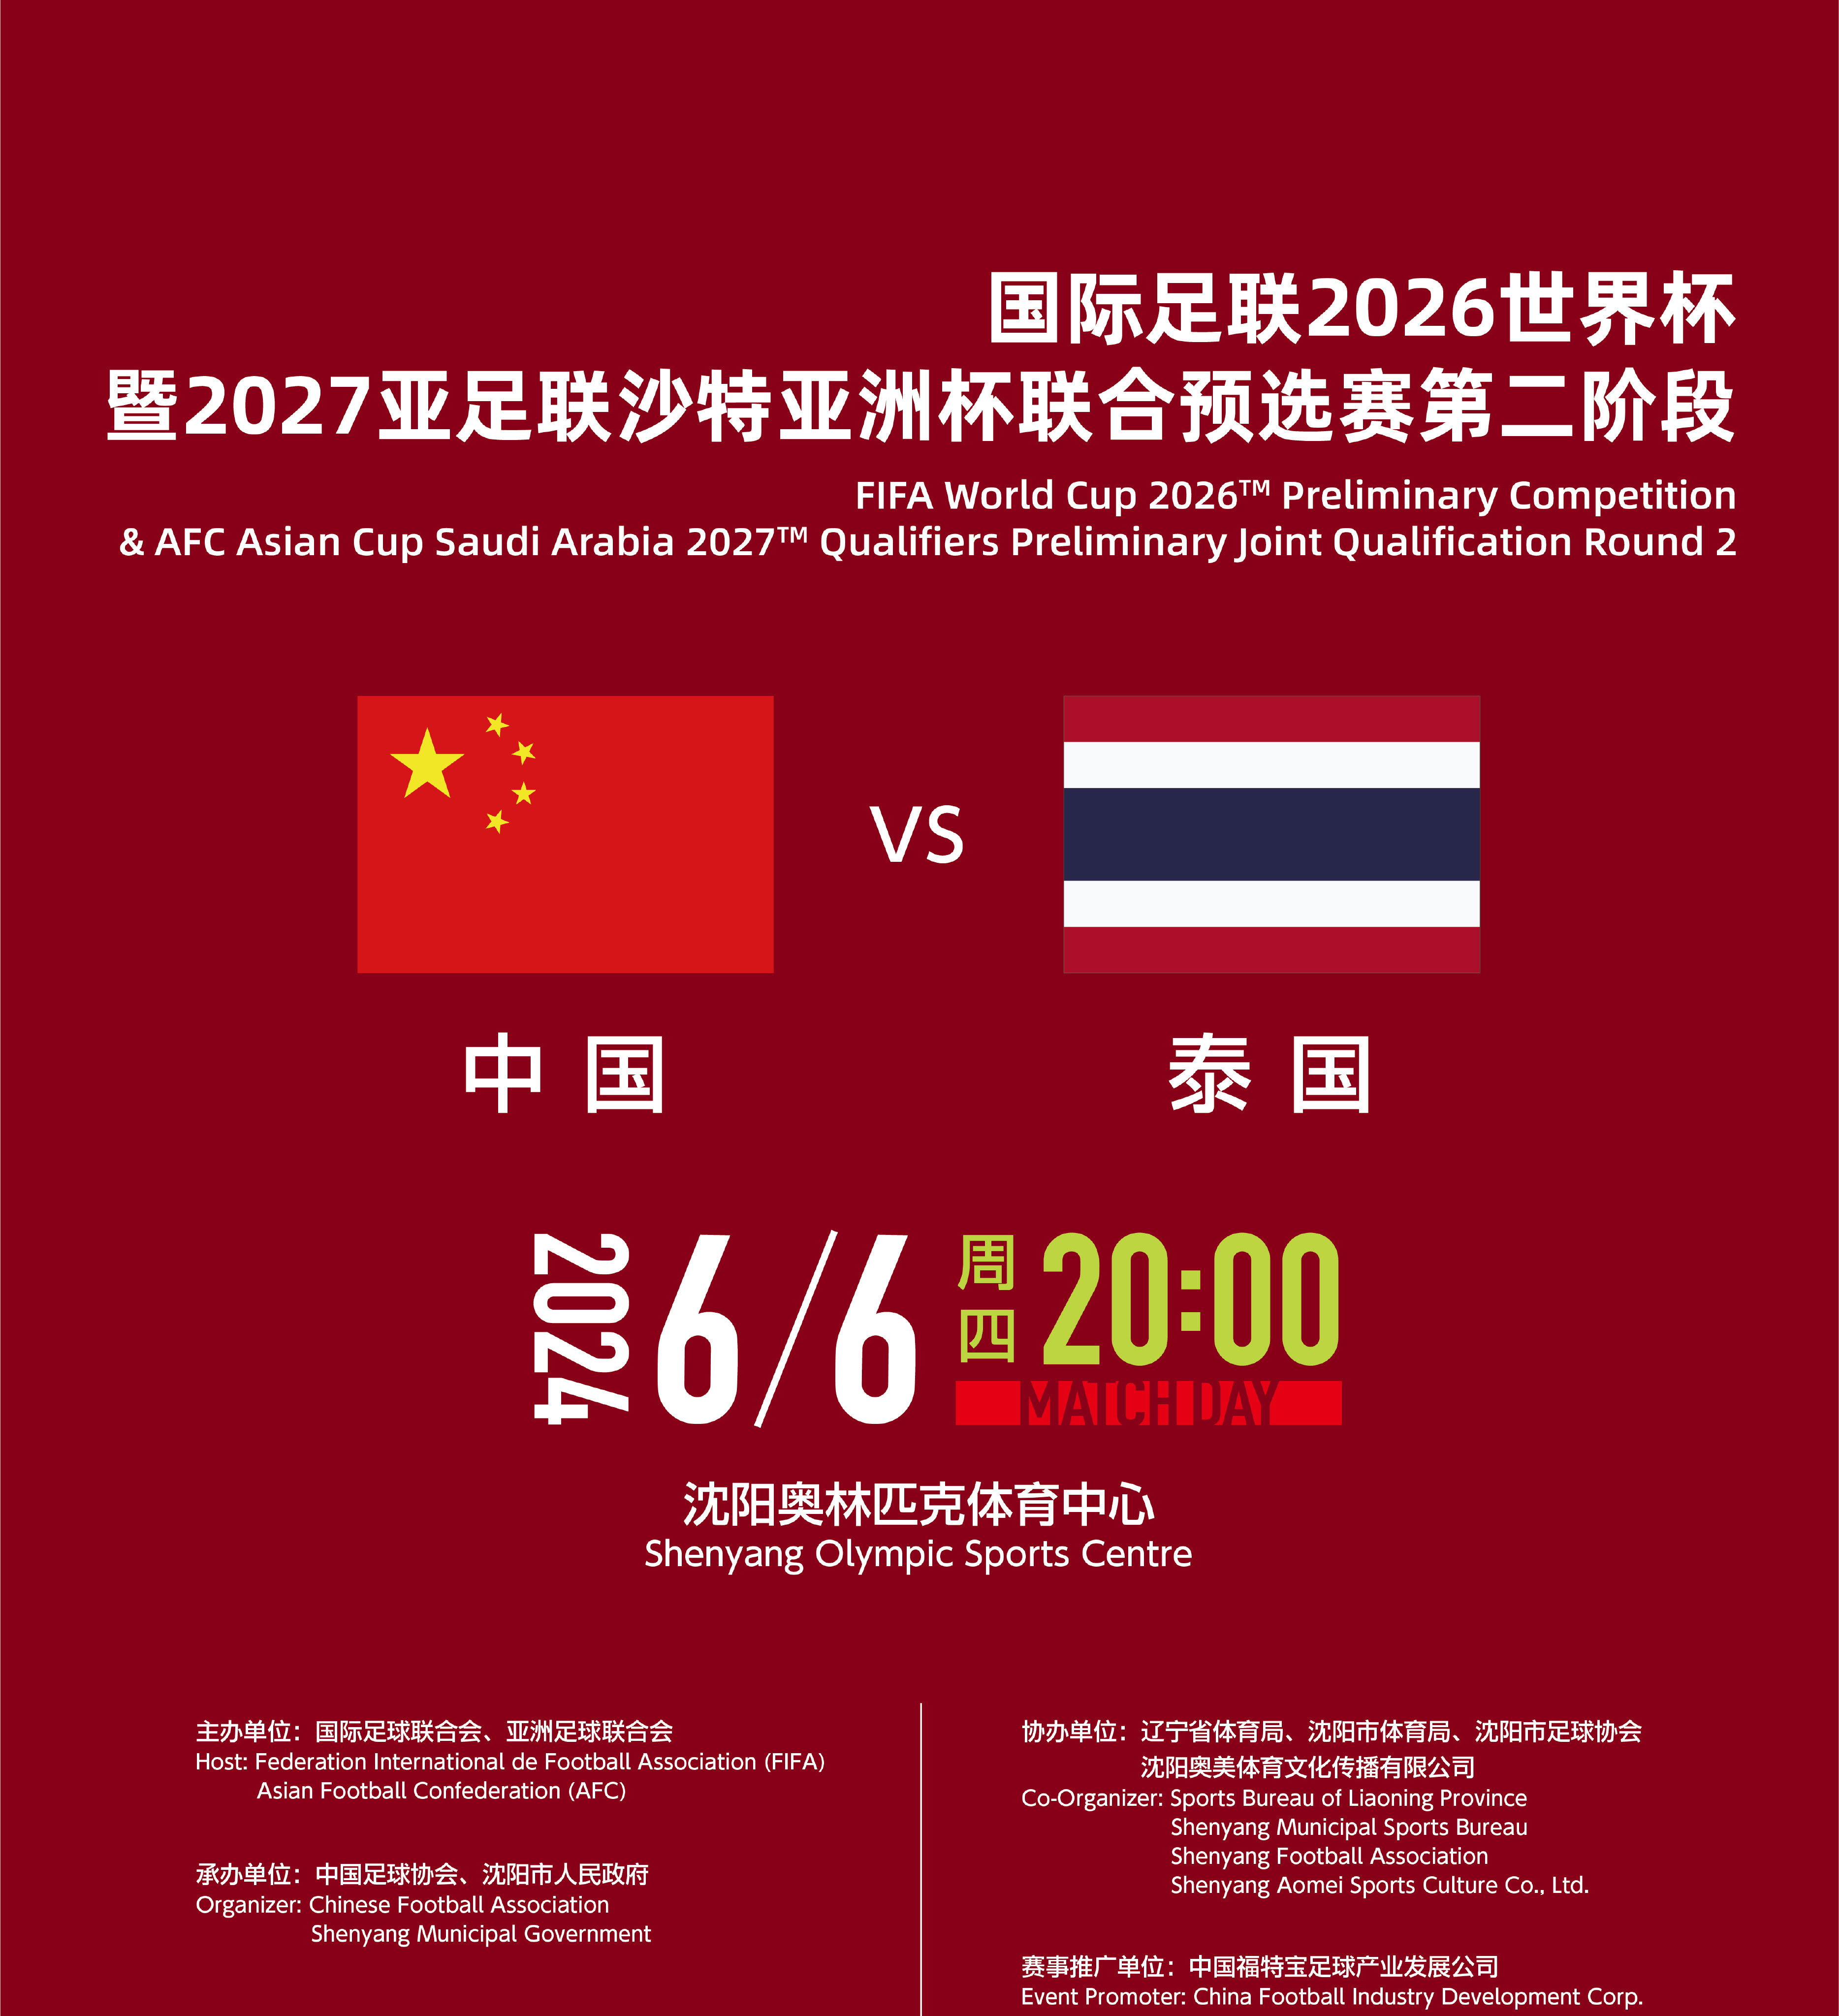 2026世界杯亚洲区预选赛第二阶段中国主场对阵泰国比赛球票开售